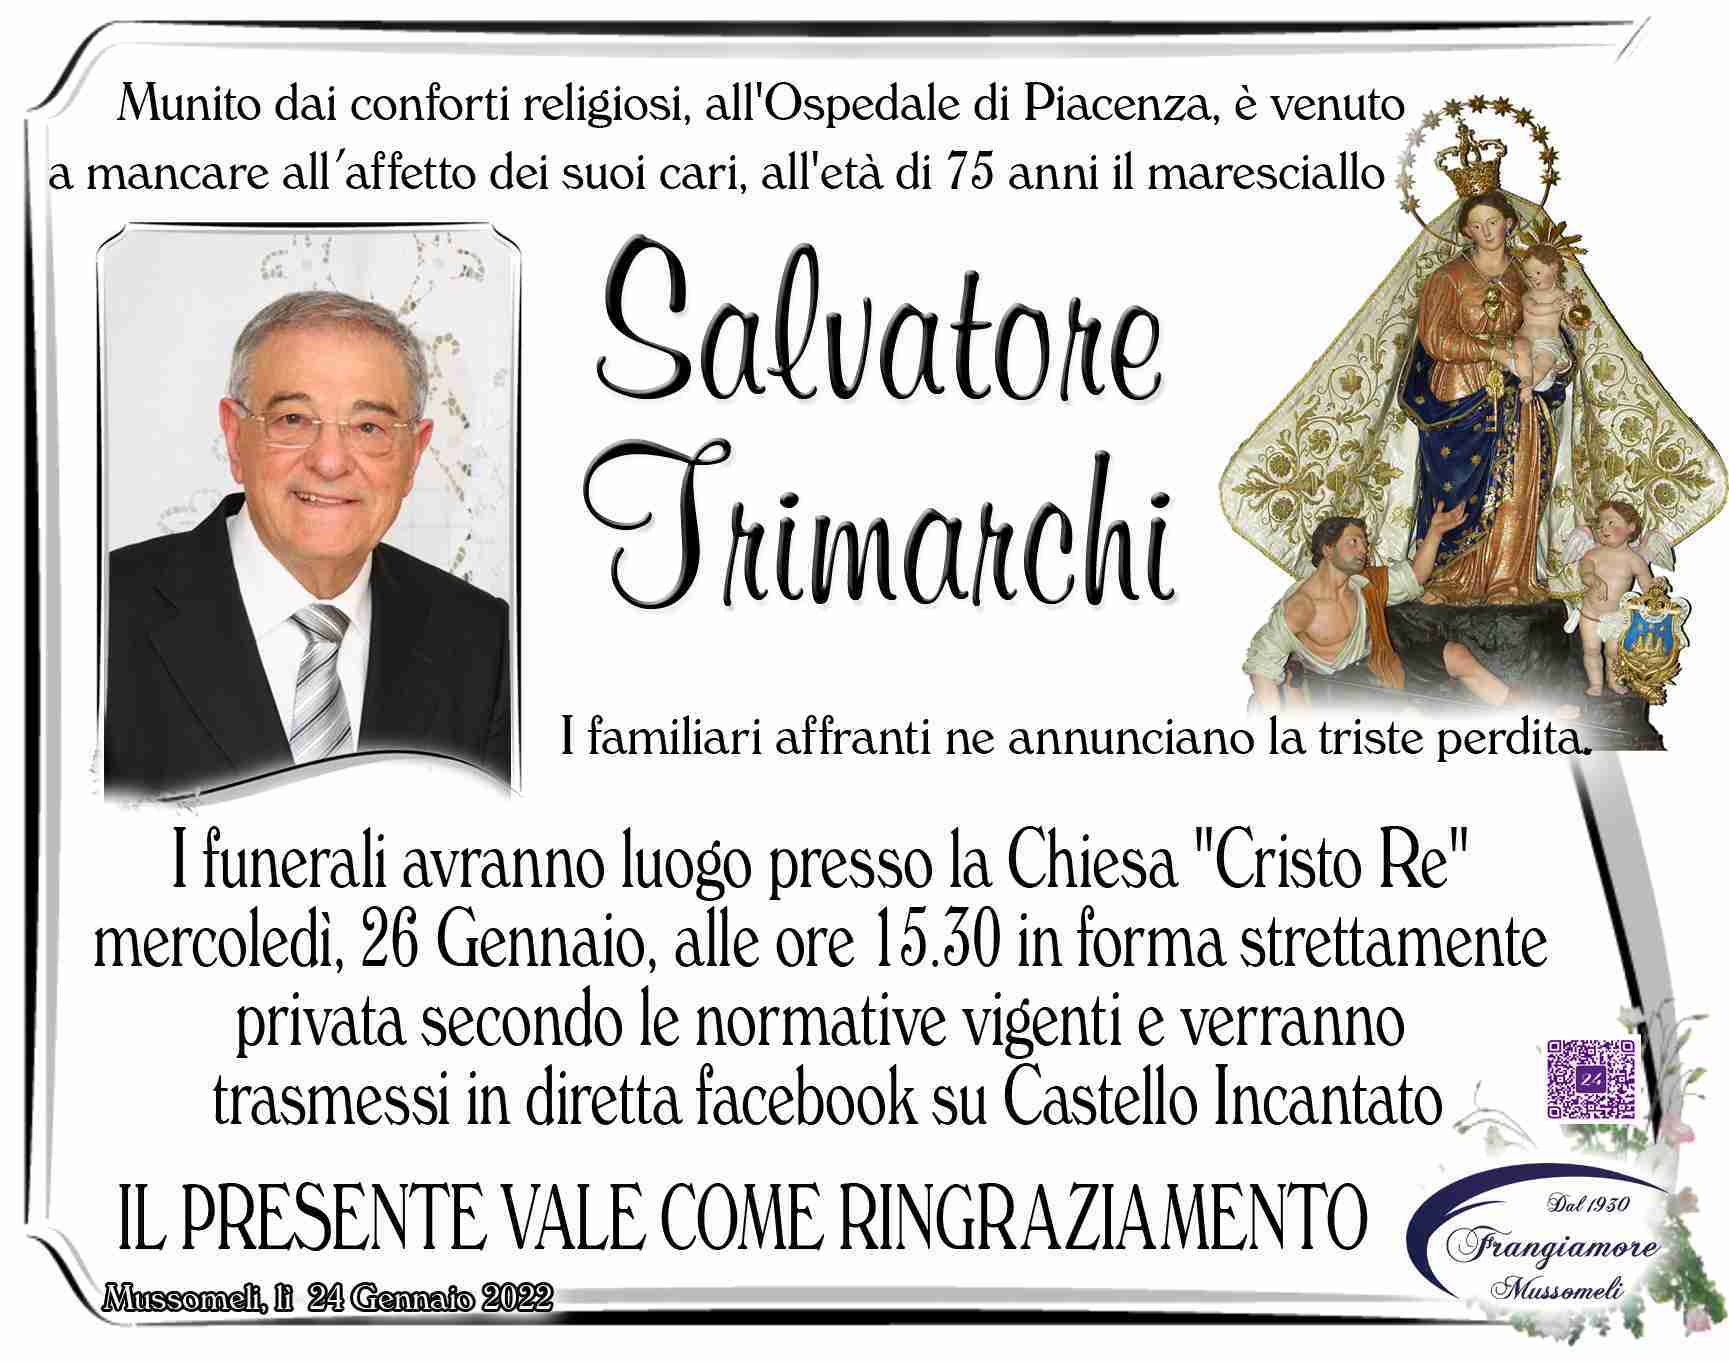 Salvatore Trimarchi